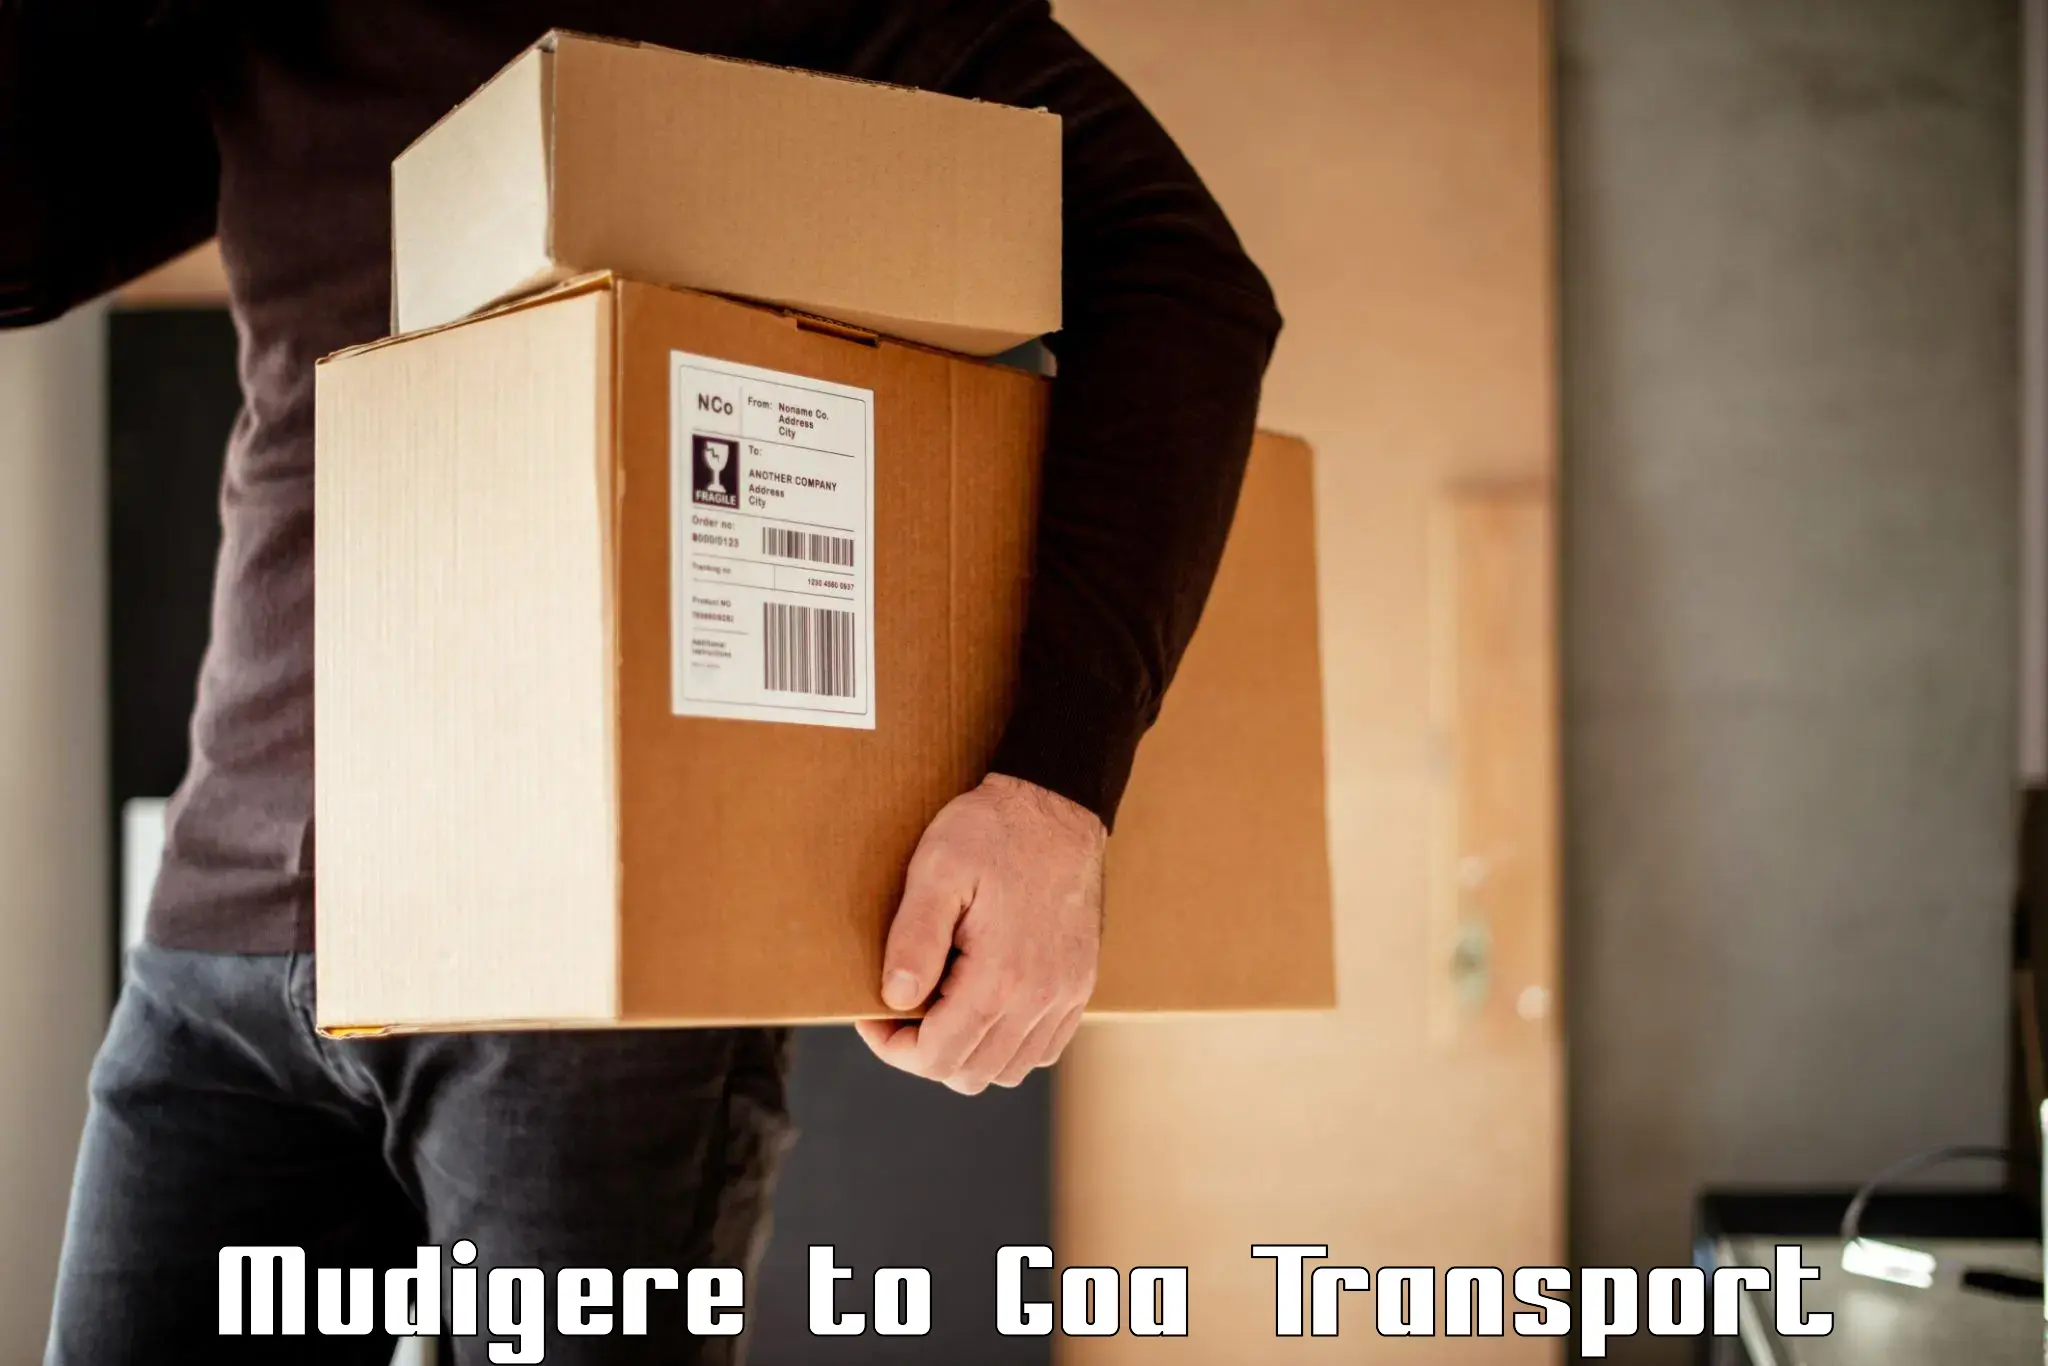 Pick up transport service Mudigere to Vasco da Gama